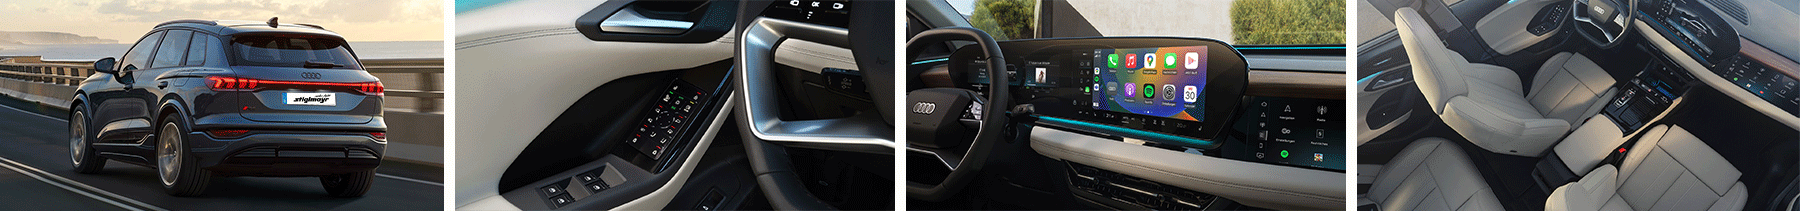 Audi Q6 e-tron uebersicht